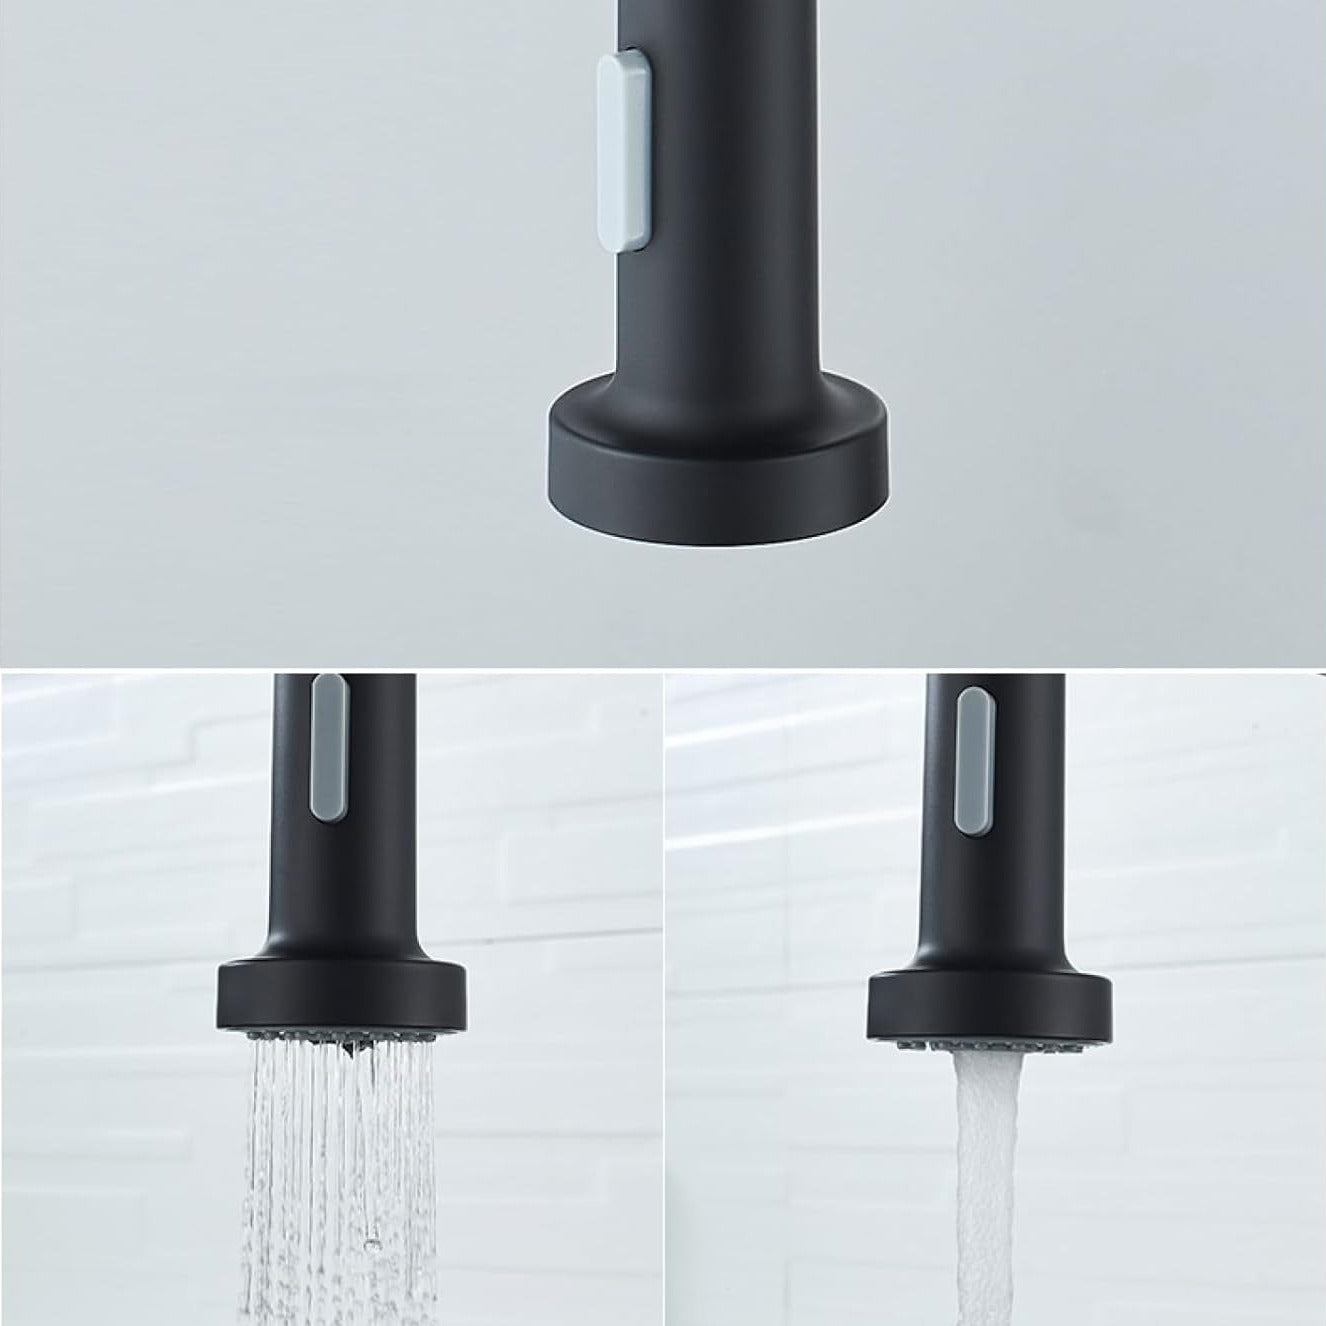 Rallonge de robinet WENKO, extension de robinet orientable avec régulateur  de jets d'eau, embout de